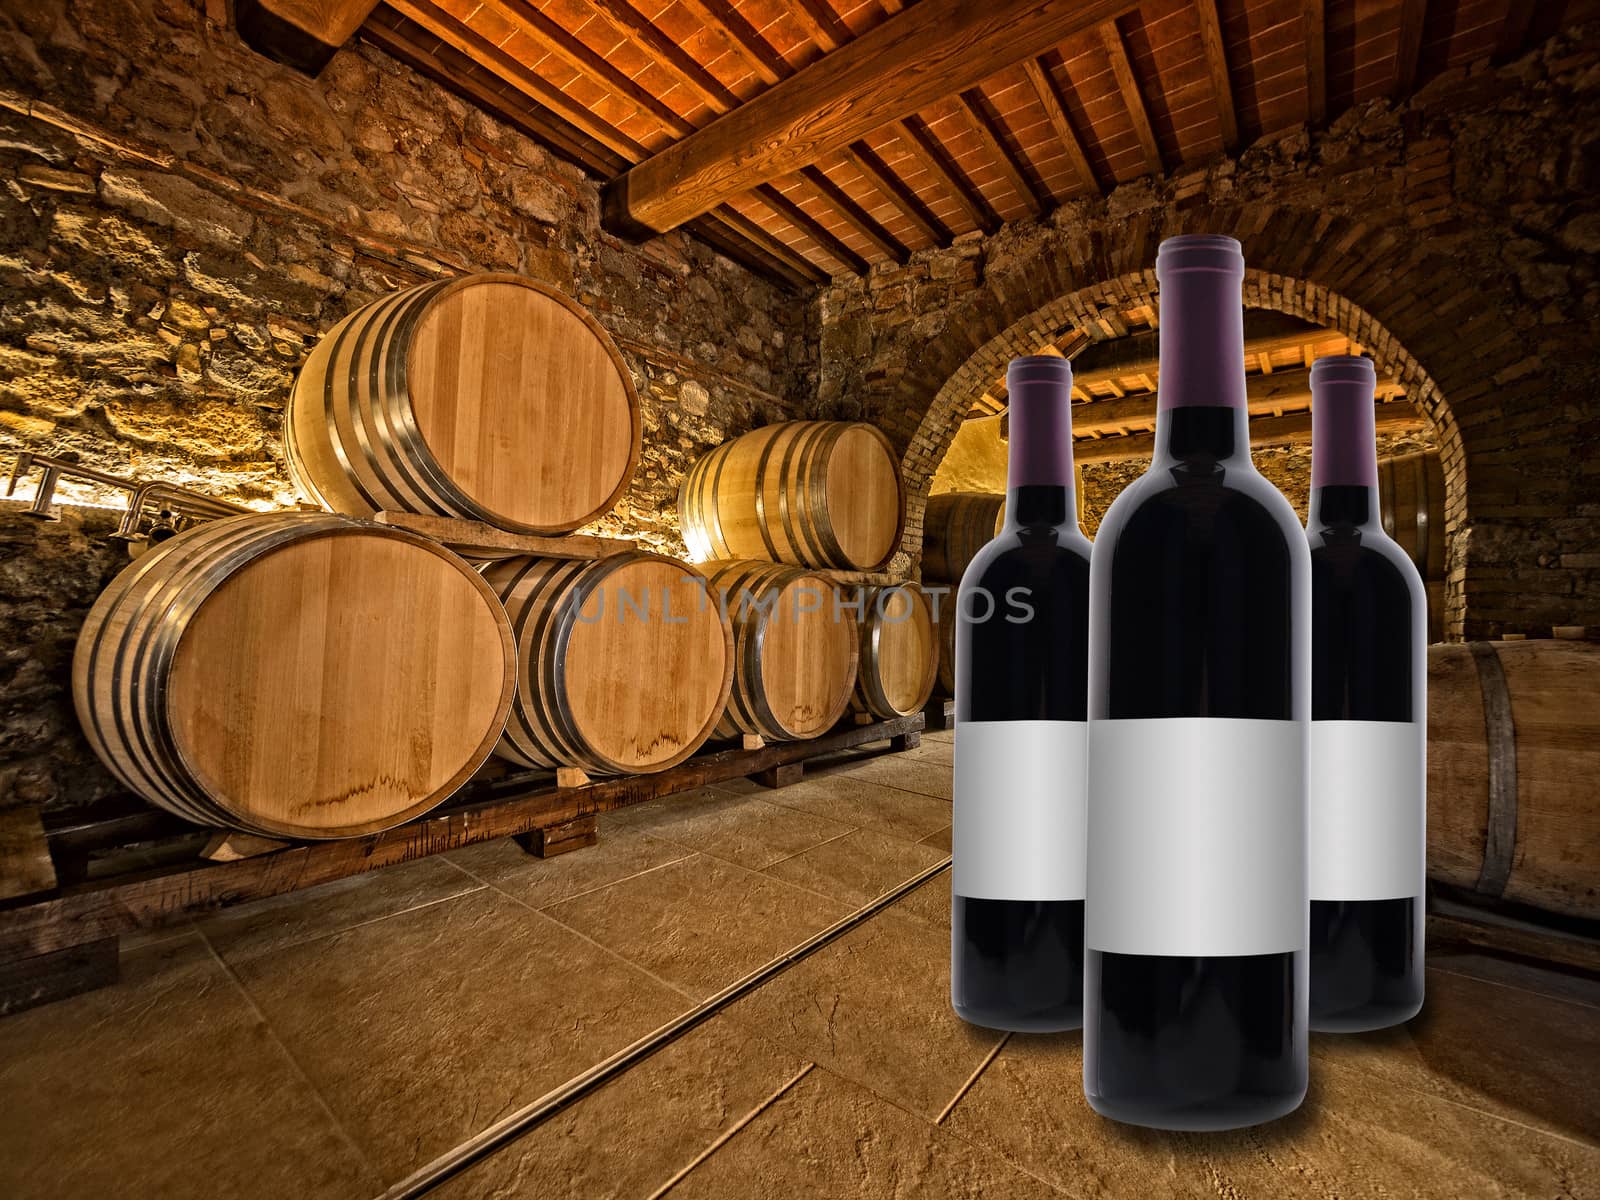 wine bottles in front of oak barrels by f/2sumicron